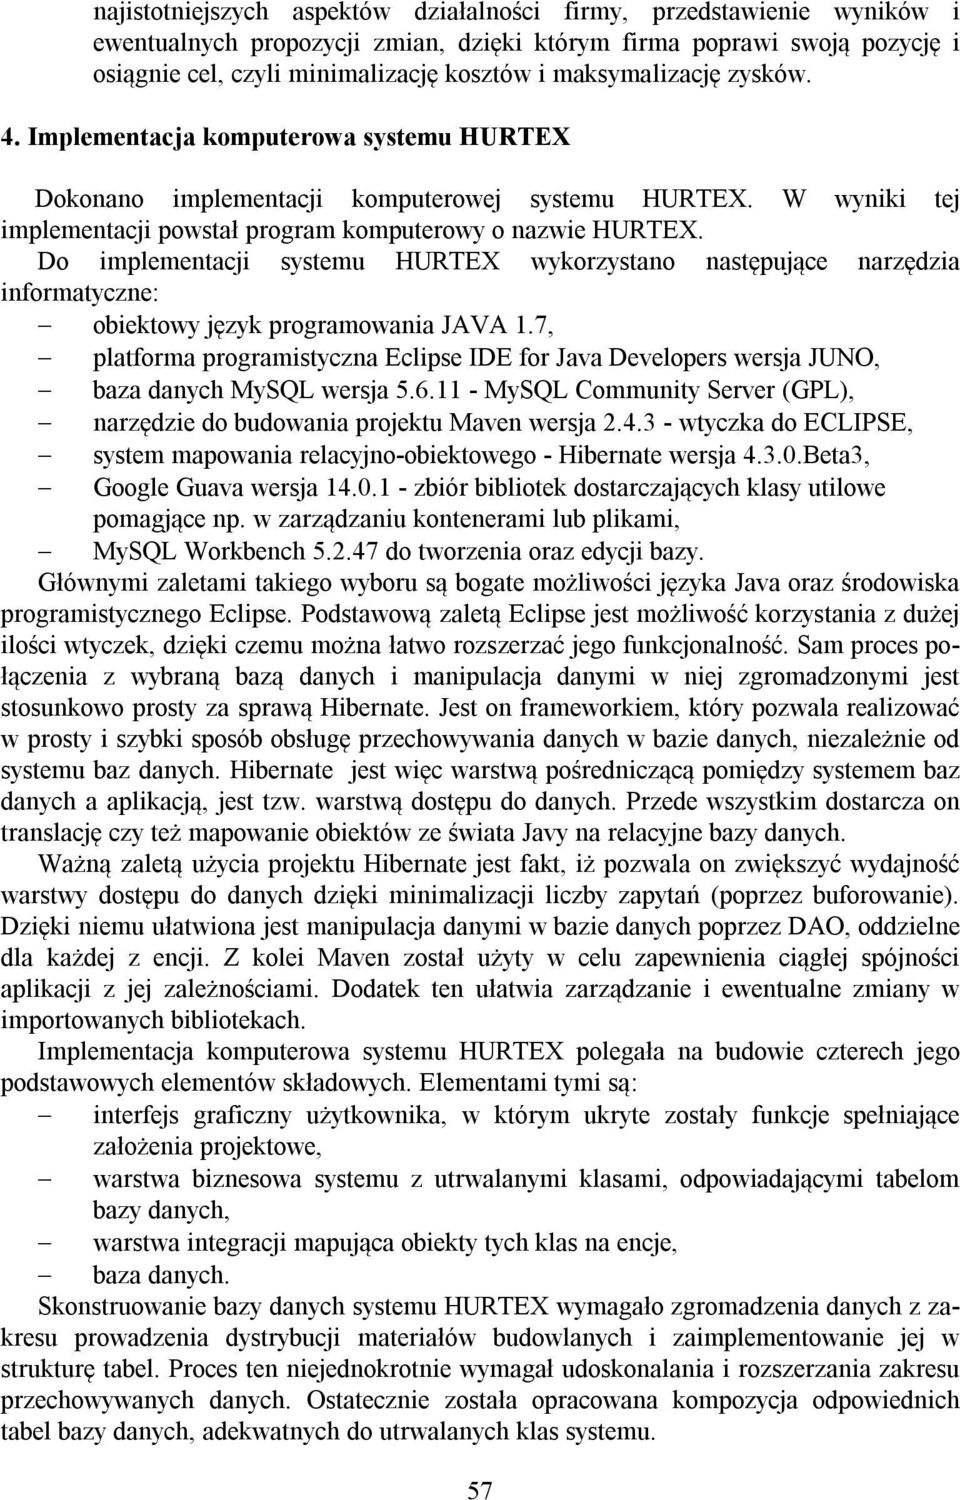 Do implementacji systemu HURTEX wykorzystano następujące narzędzia informatyczne: obiektowy język programowania JAVA 1.